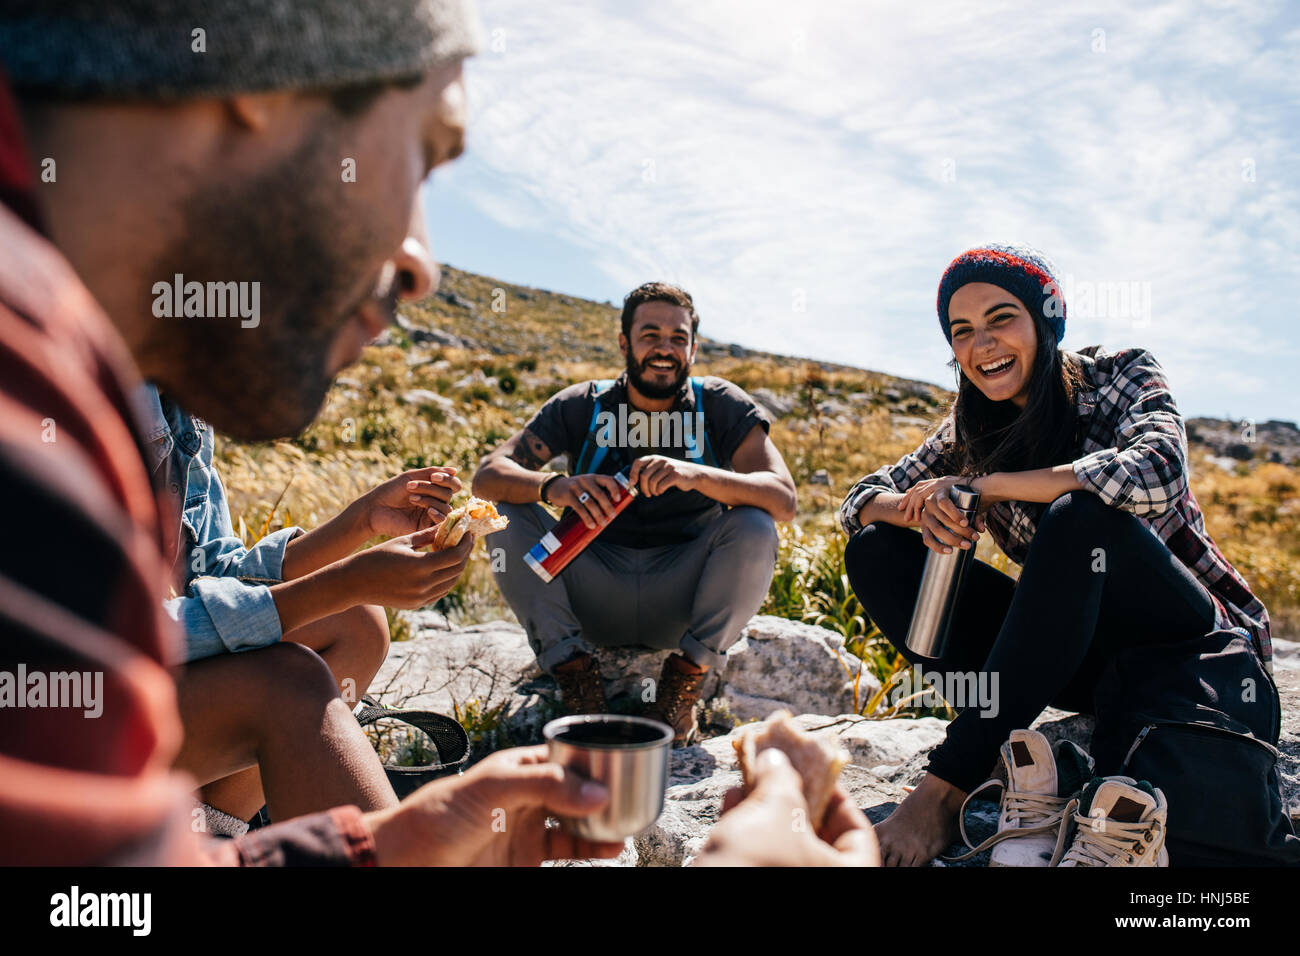 Groupe de personnes se détendre et manger au cours de la randonnée. Jeune femme avec des amis en faisant une pause pendant une randonnée dans la campagne. Banque D'Images